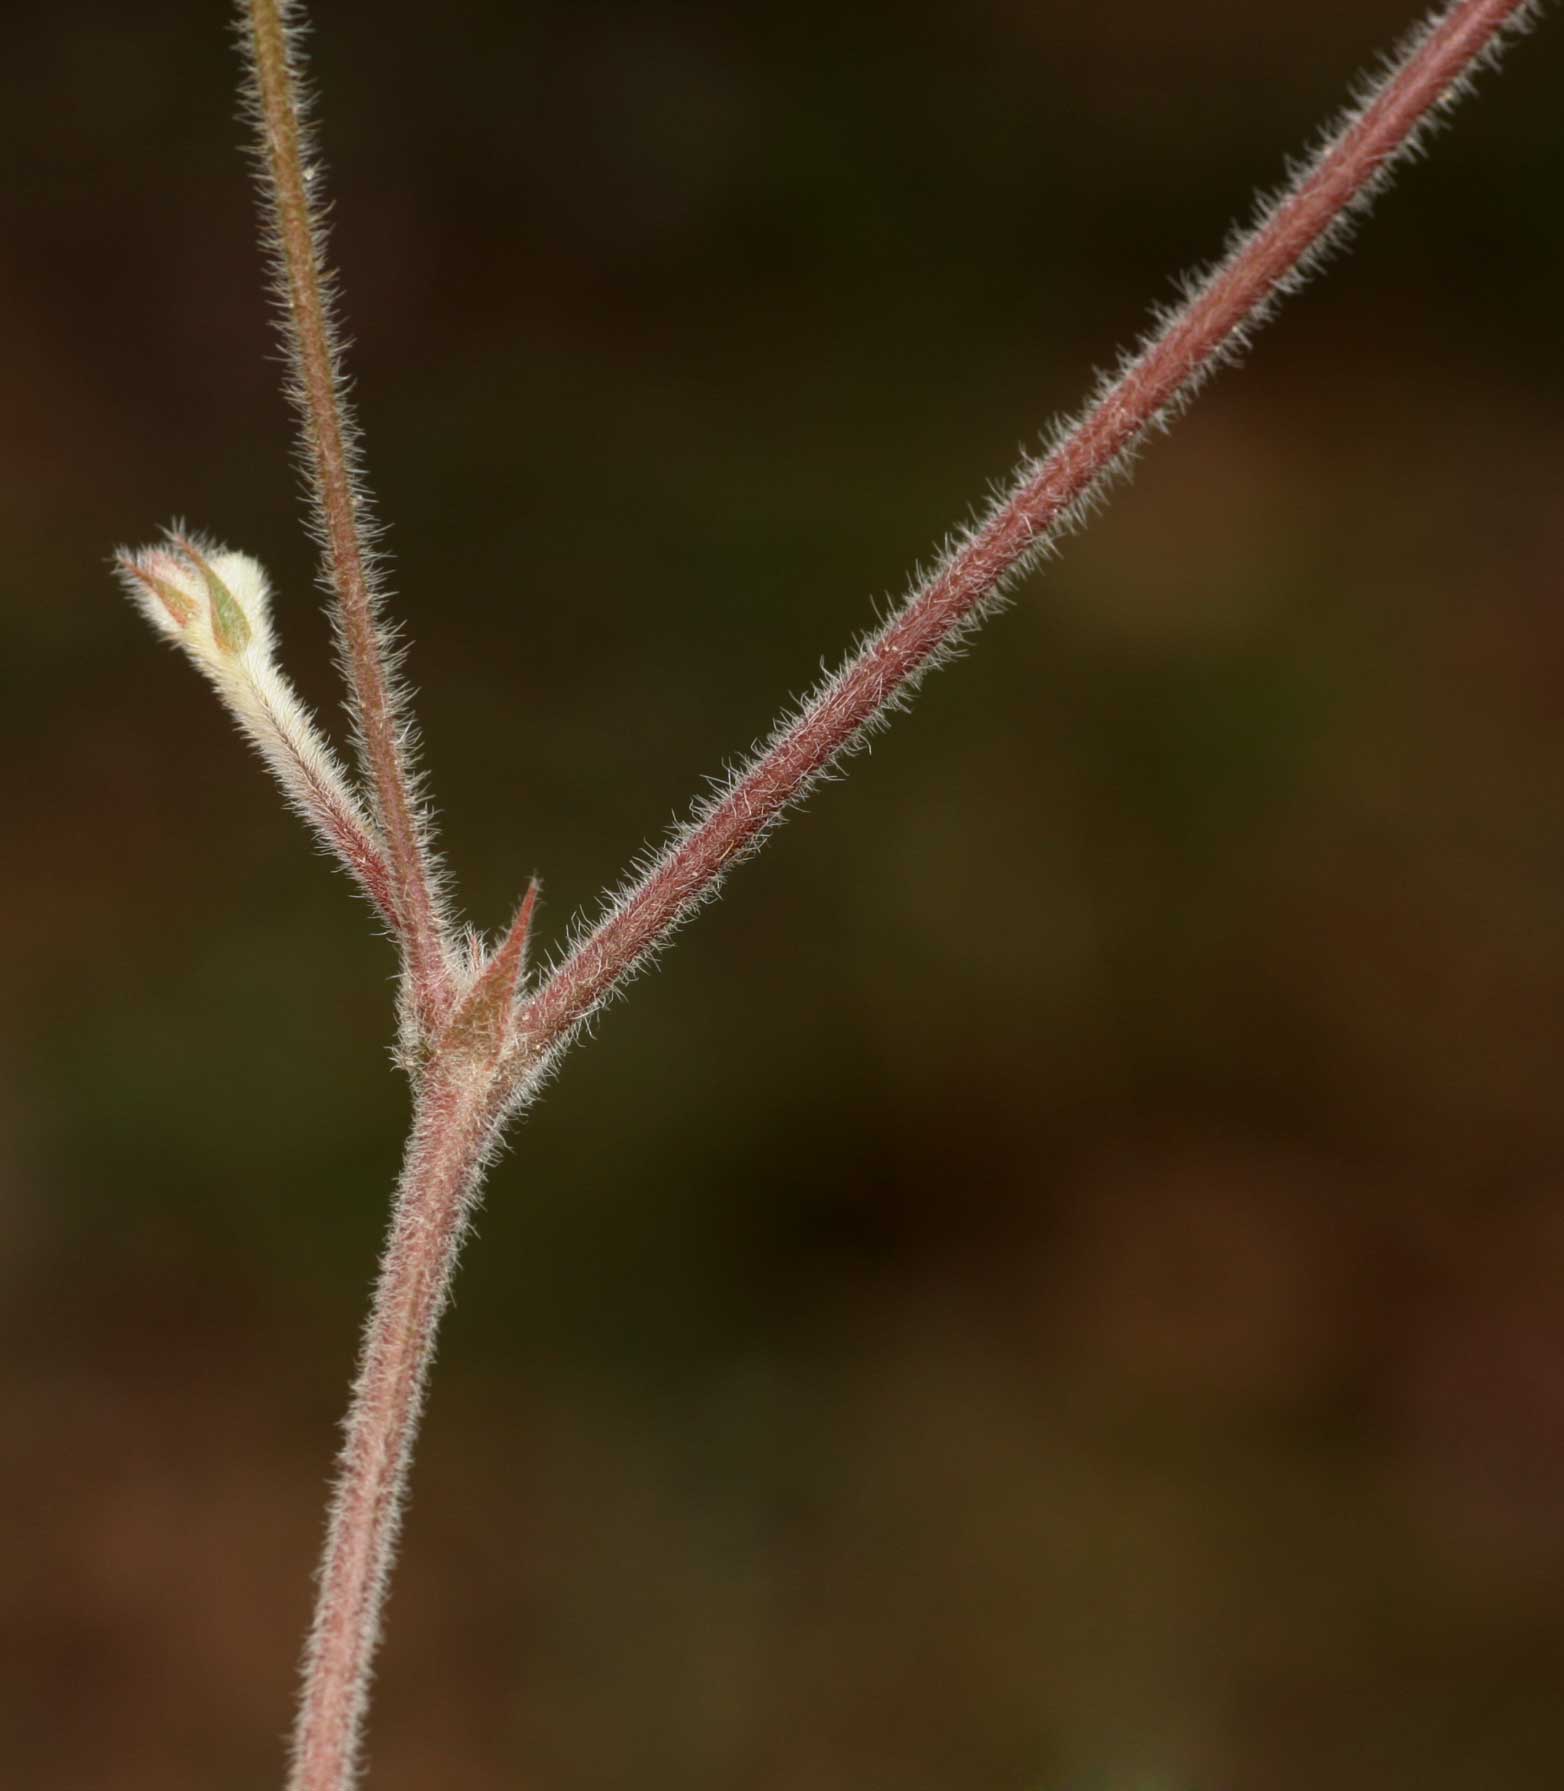 Tephrosia lupinifolia